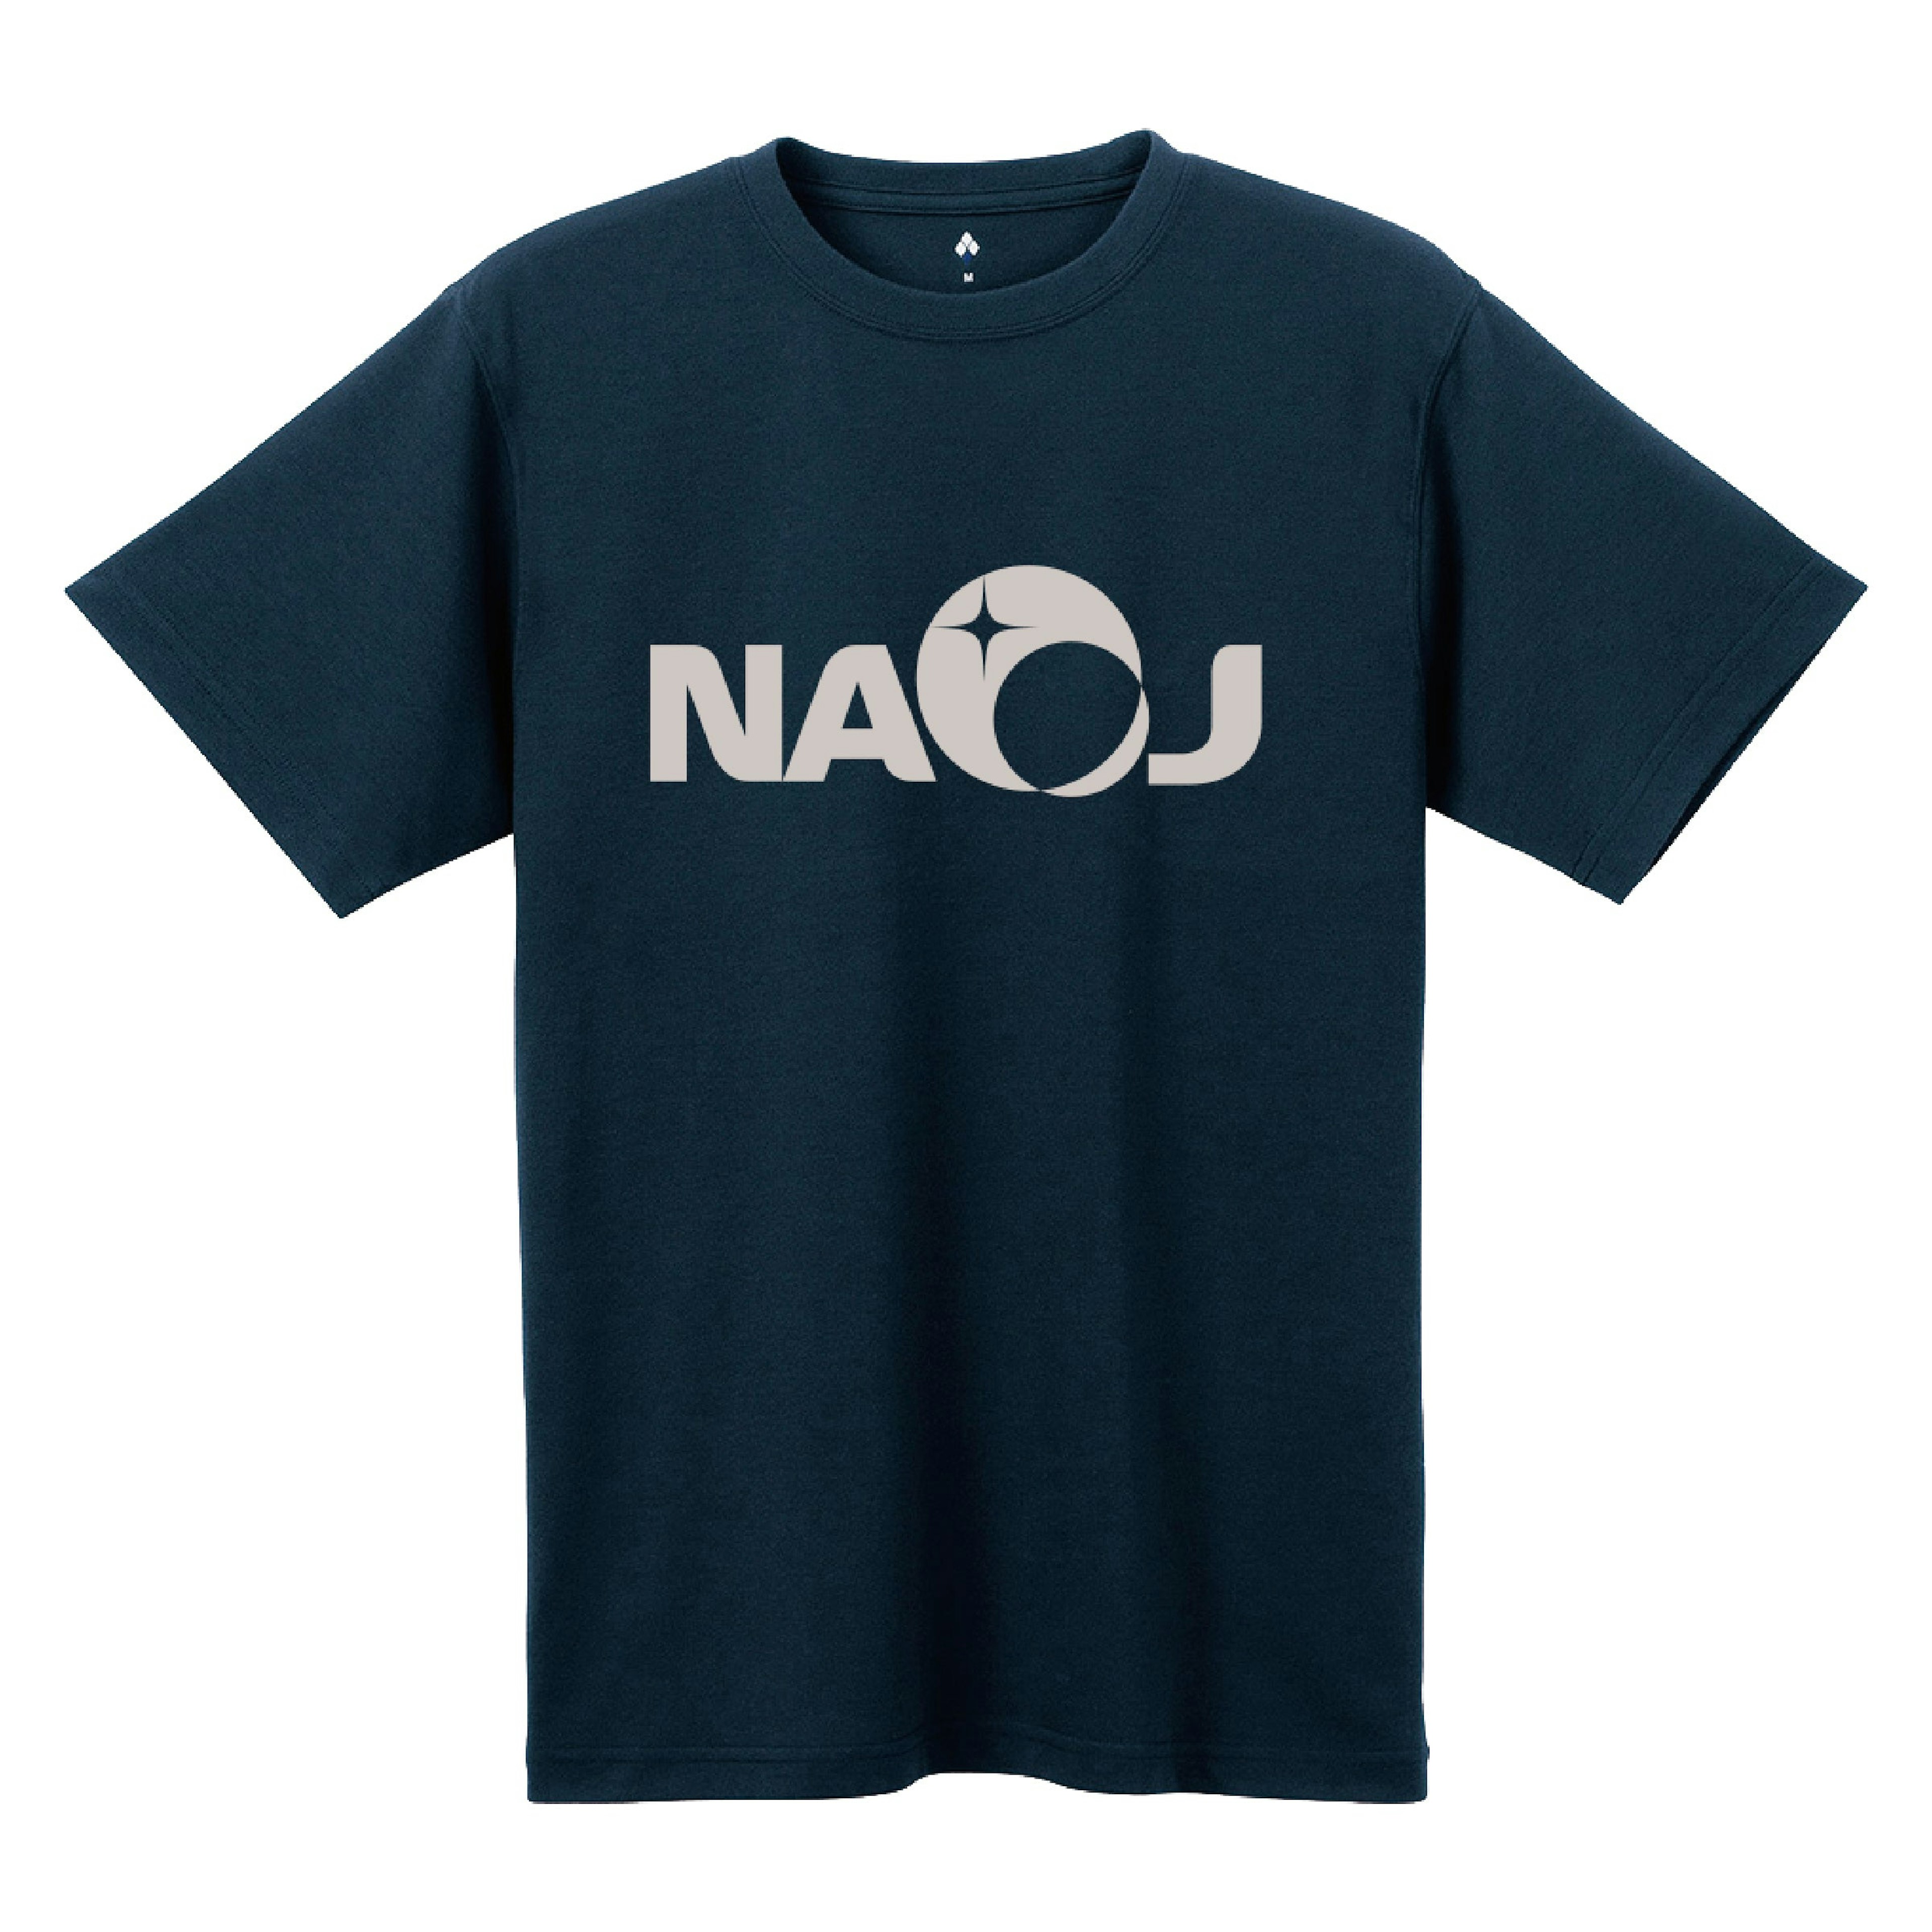 国立天文台 NAOJ ロゴマーク WIC.Tシャツ